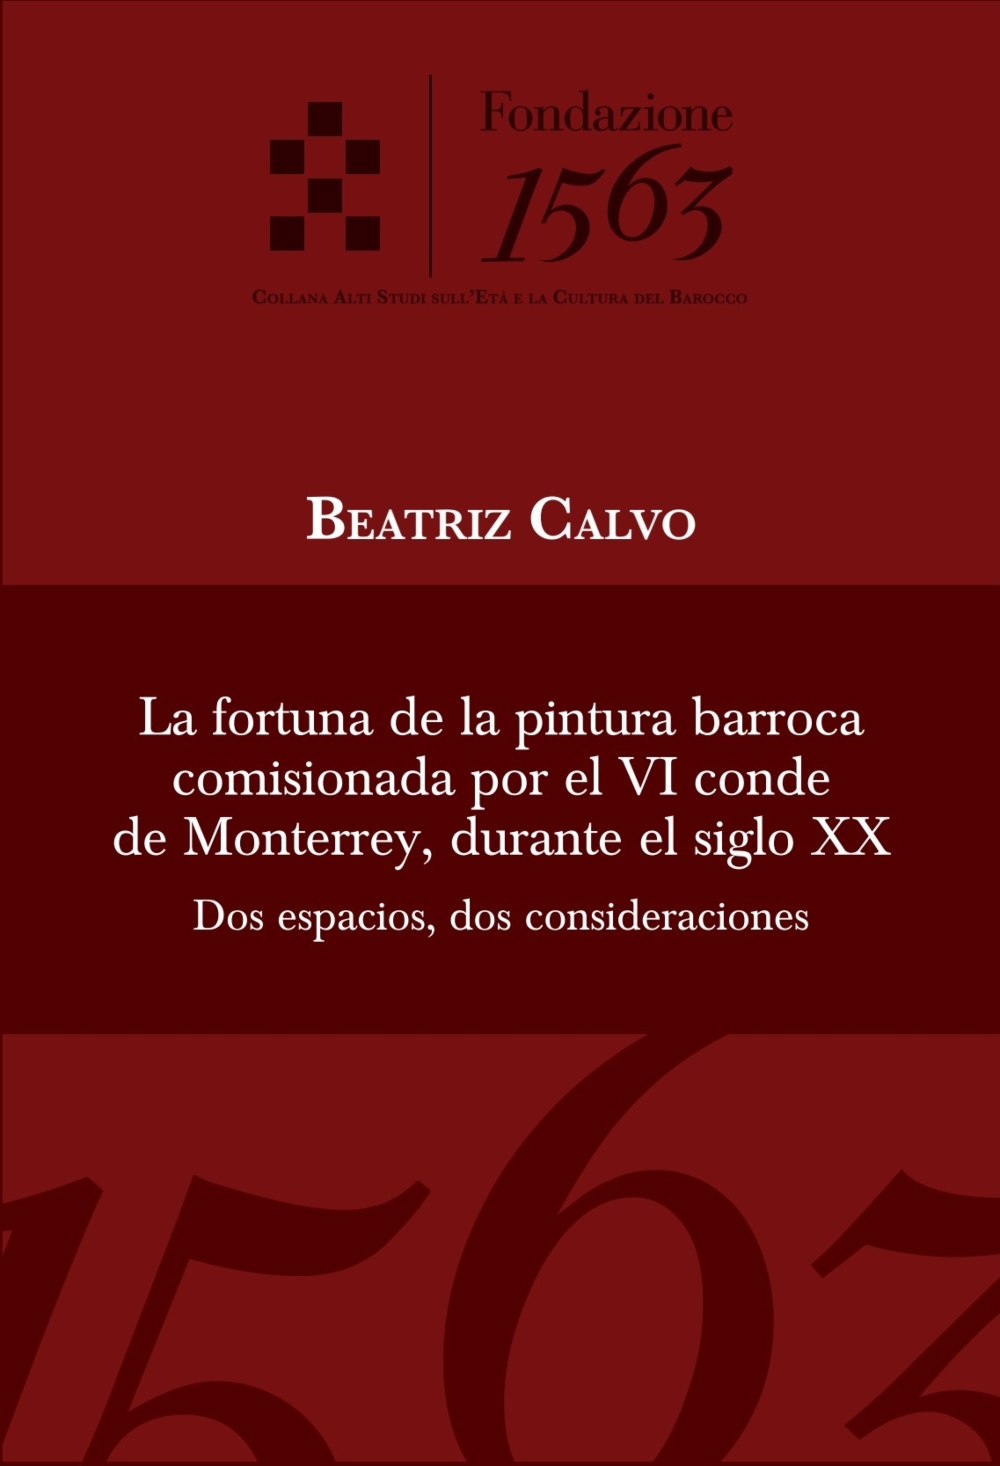 La fortuna de la pintura barroca comisionada por el VI conde de Monterrey, durante el siglo XX. Dos espacios, dos consideraciones, Fondazione 1563, ASECB, 2024